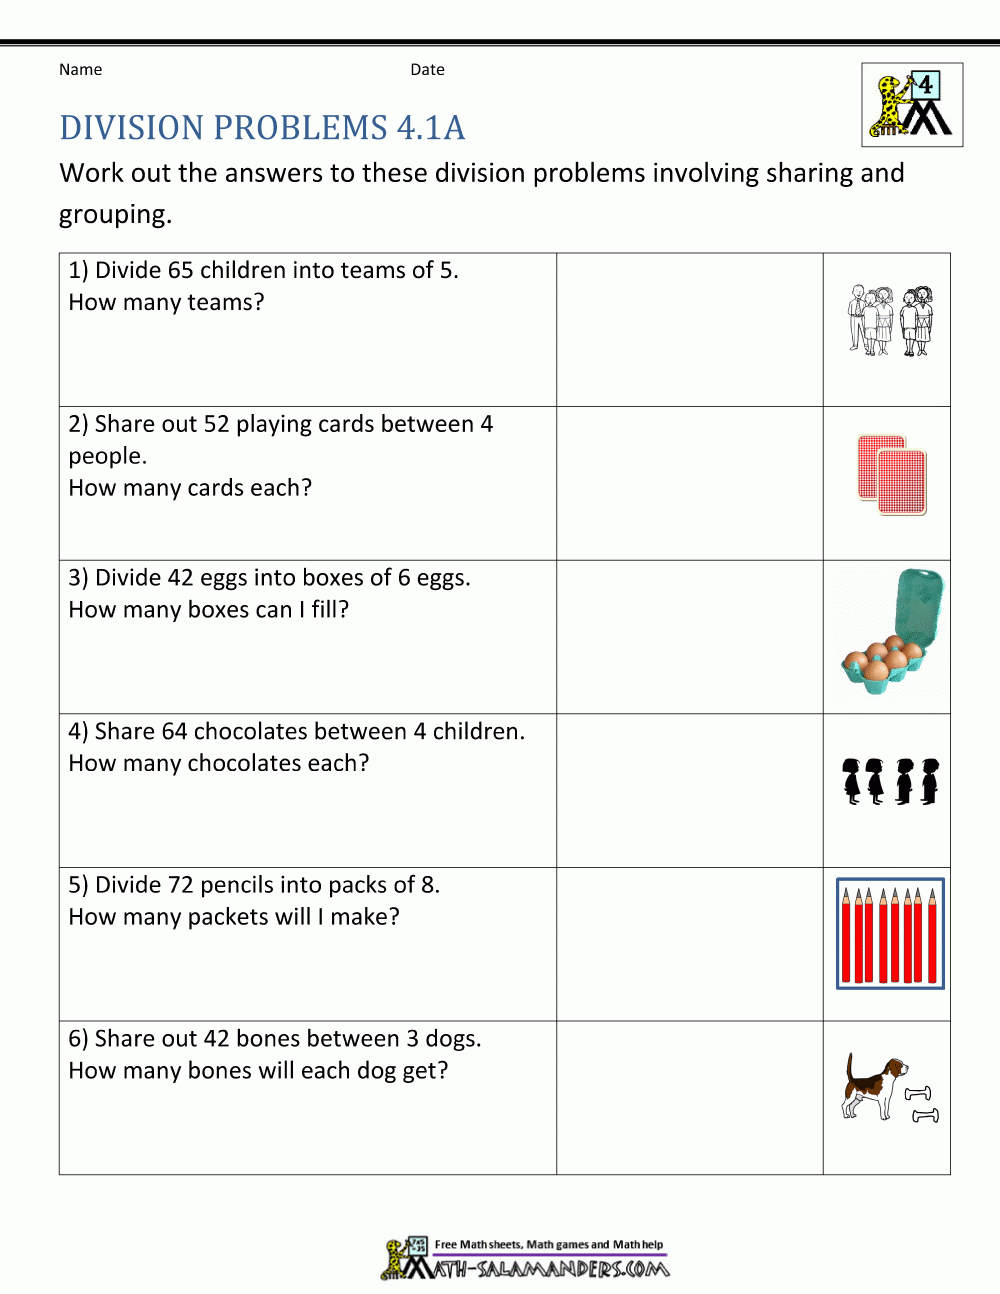 multiplication problem solving grade 4 pdf